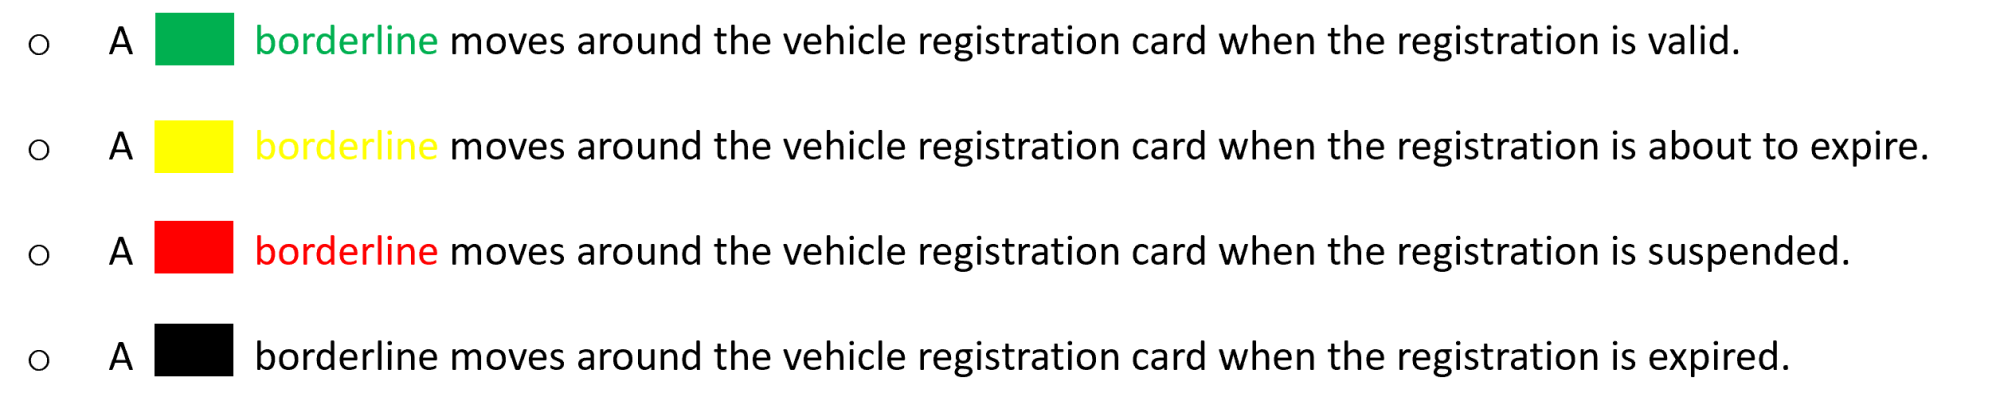 Digital Vehicle Registration Card Information